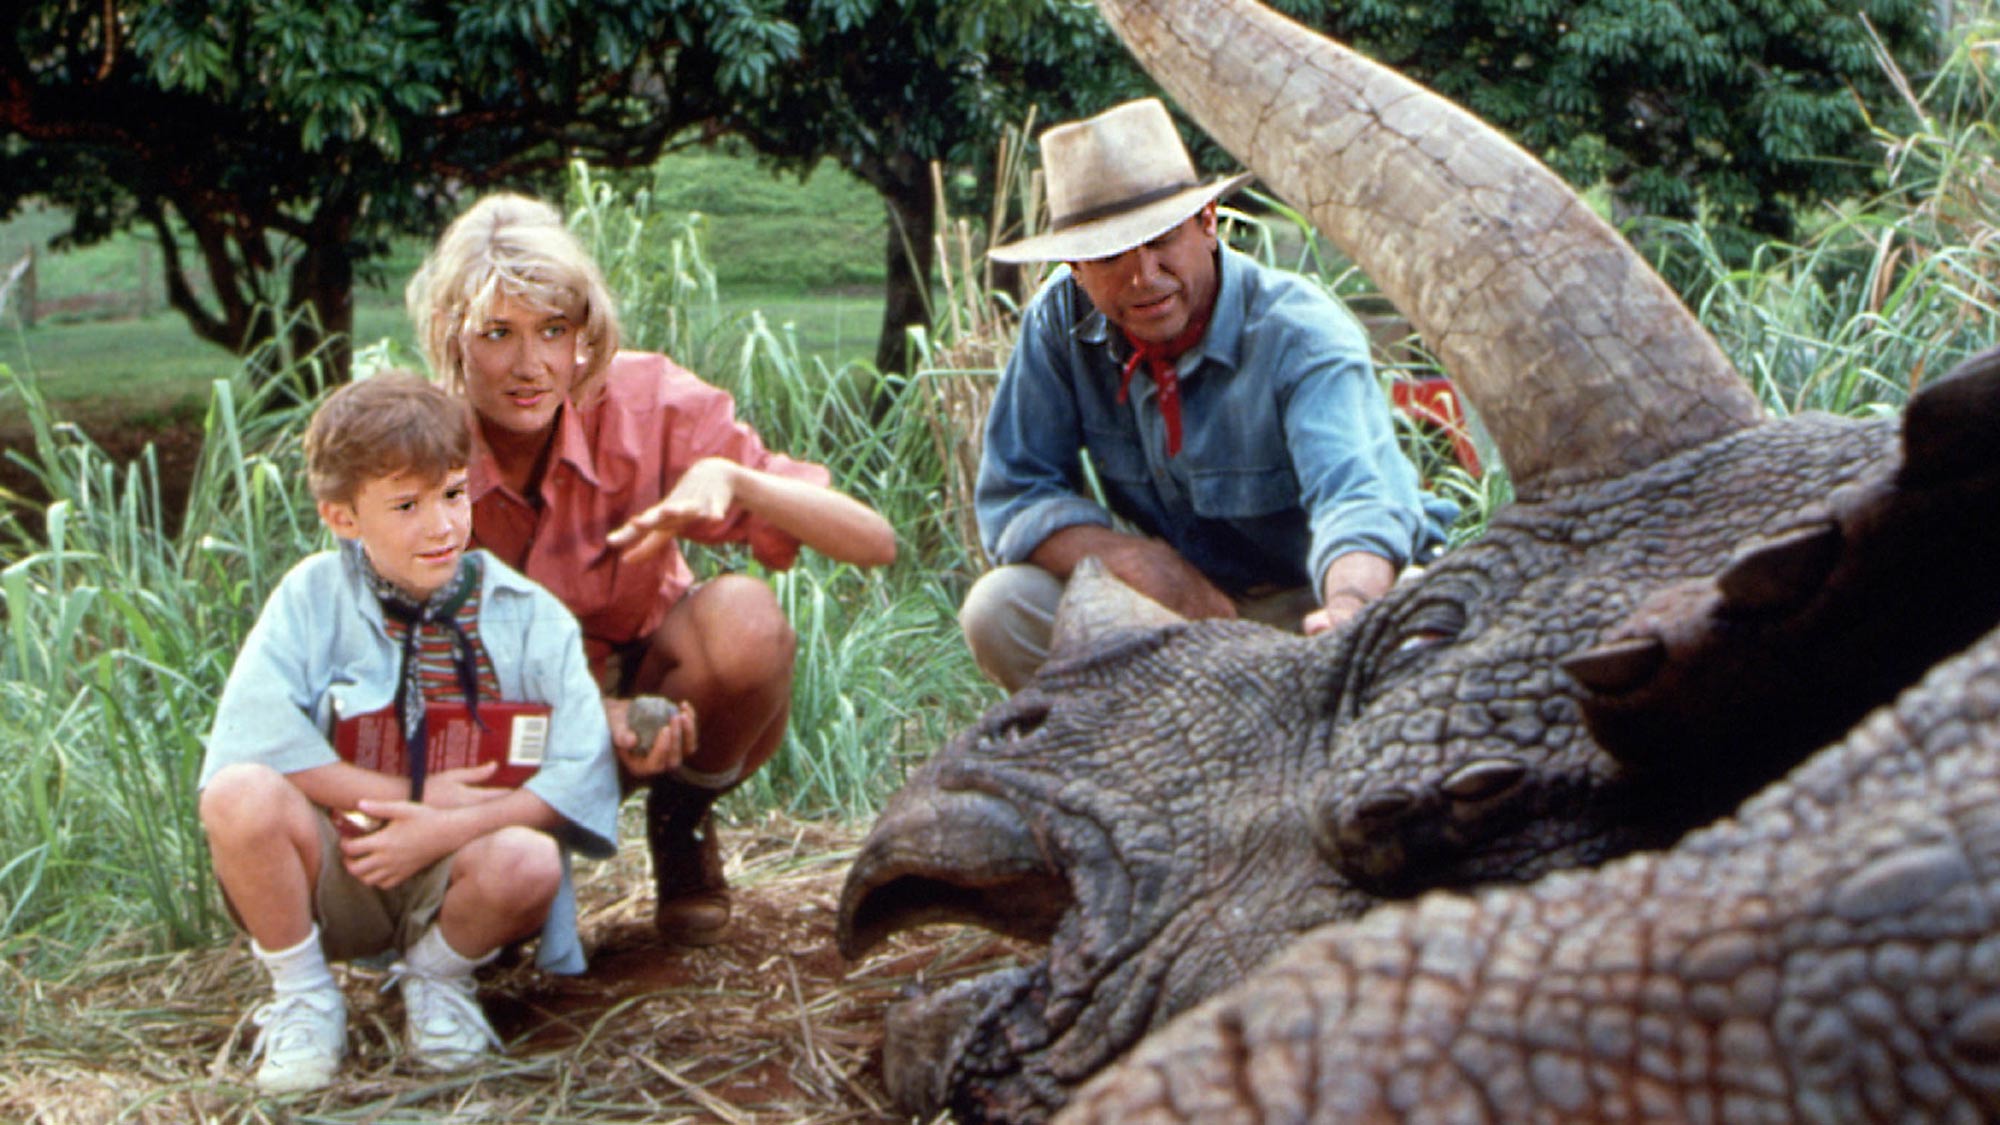 (De gauche à droite) Laura Dern dans le rôle du Dr Ellie Sattler et Sam Neill dans le rôle du Dr Alan Grant dans Jurassic Park, regardant un dinosaure blessé ou mort avec un jeune enfant